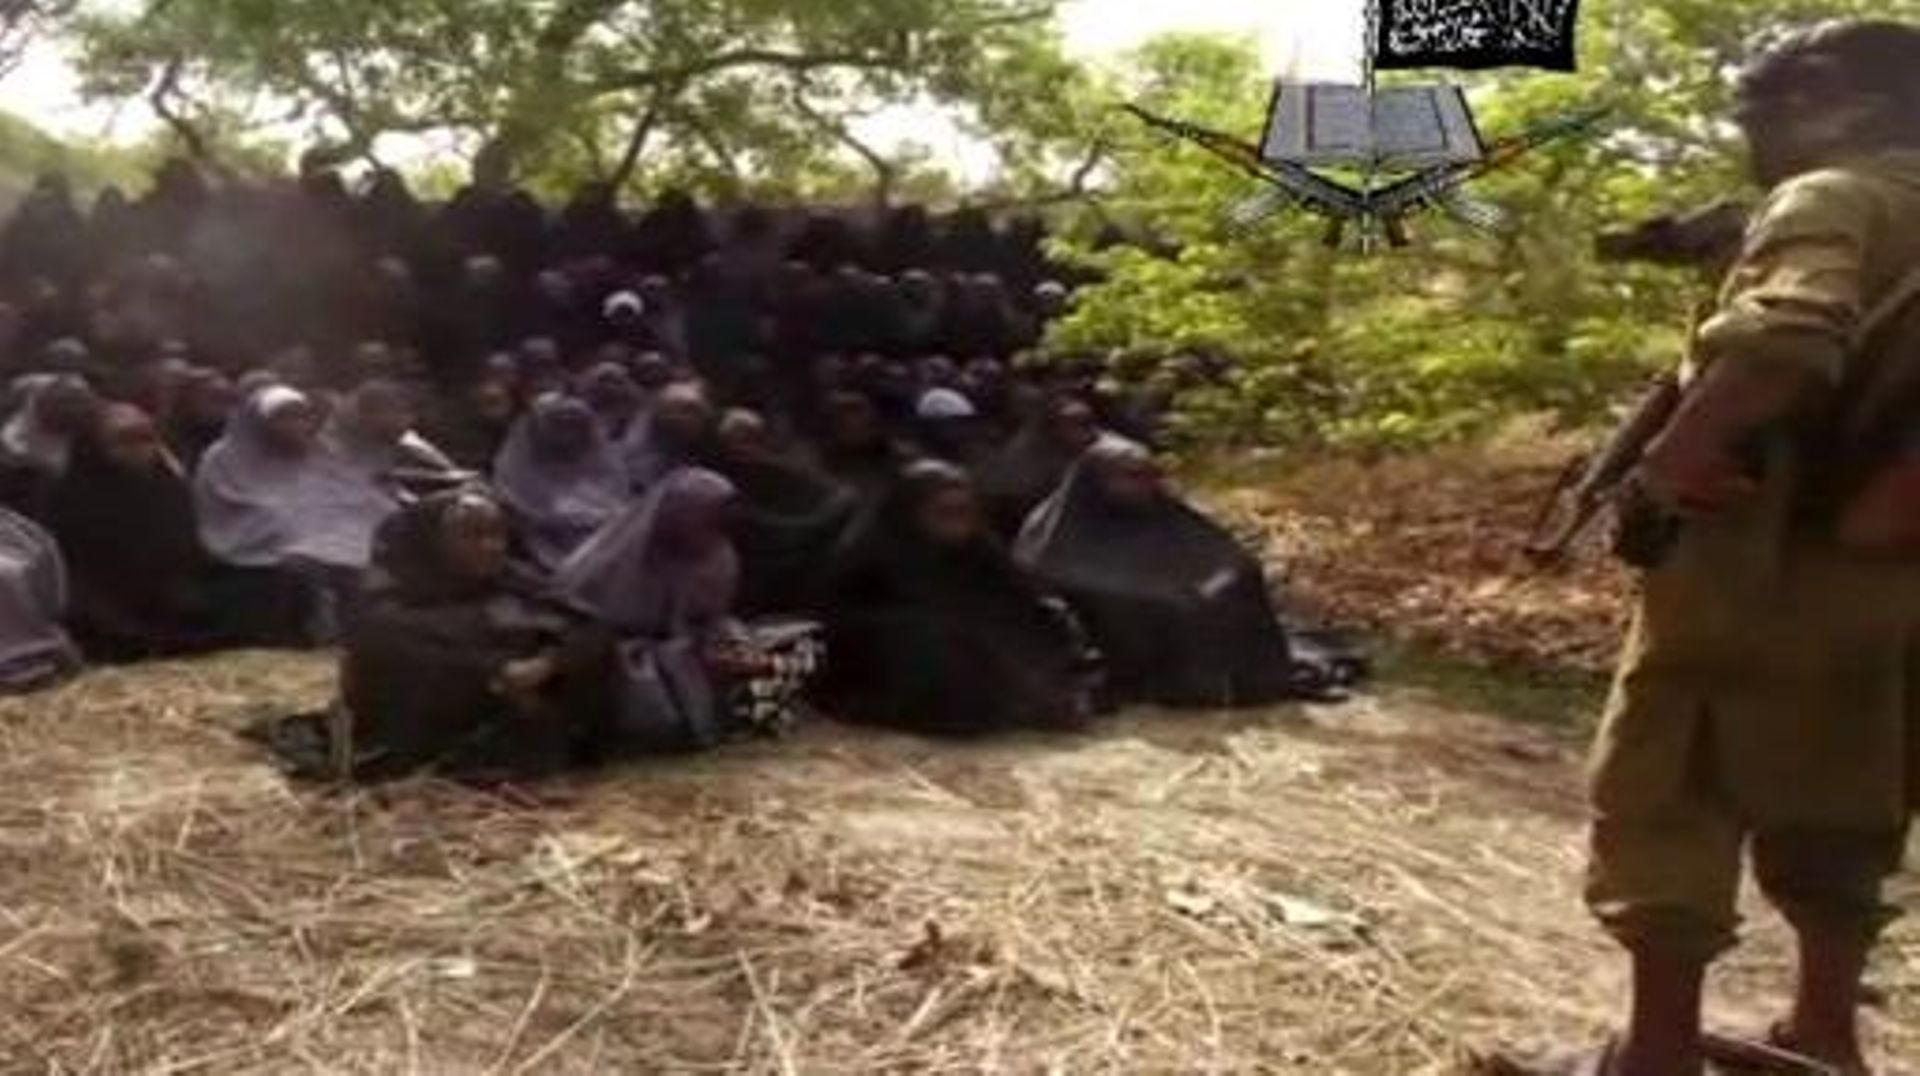 Capture d'écran de la vidéo de Boko Haram diffusée le 12 mai 2014 montrant des lycéennes enlevées par le groupe islamiste en train de prier, habillées en hijab, dans un endroit non précisé